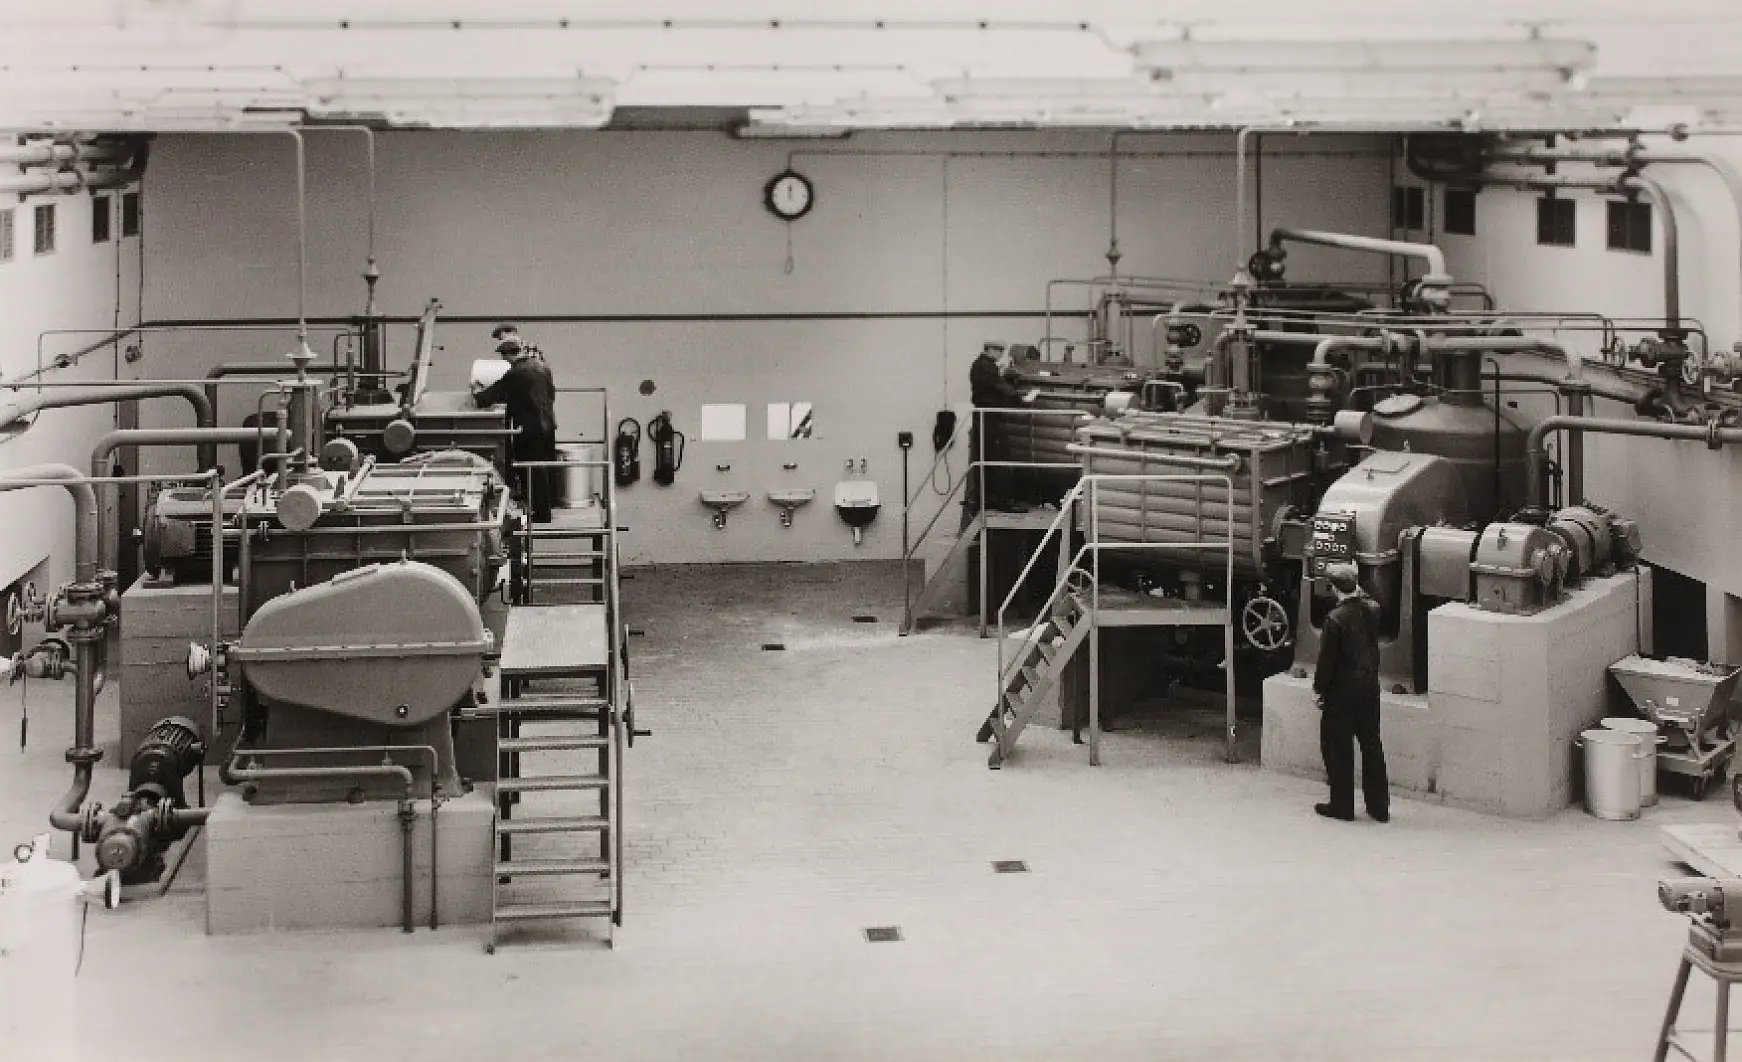 1961 skedde framställningen av självhäftande produkter och lösningar med gummi, hartser och andra råvaror i knådningsrummet.